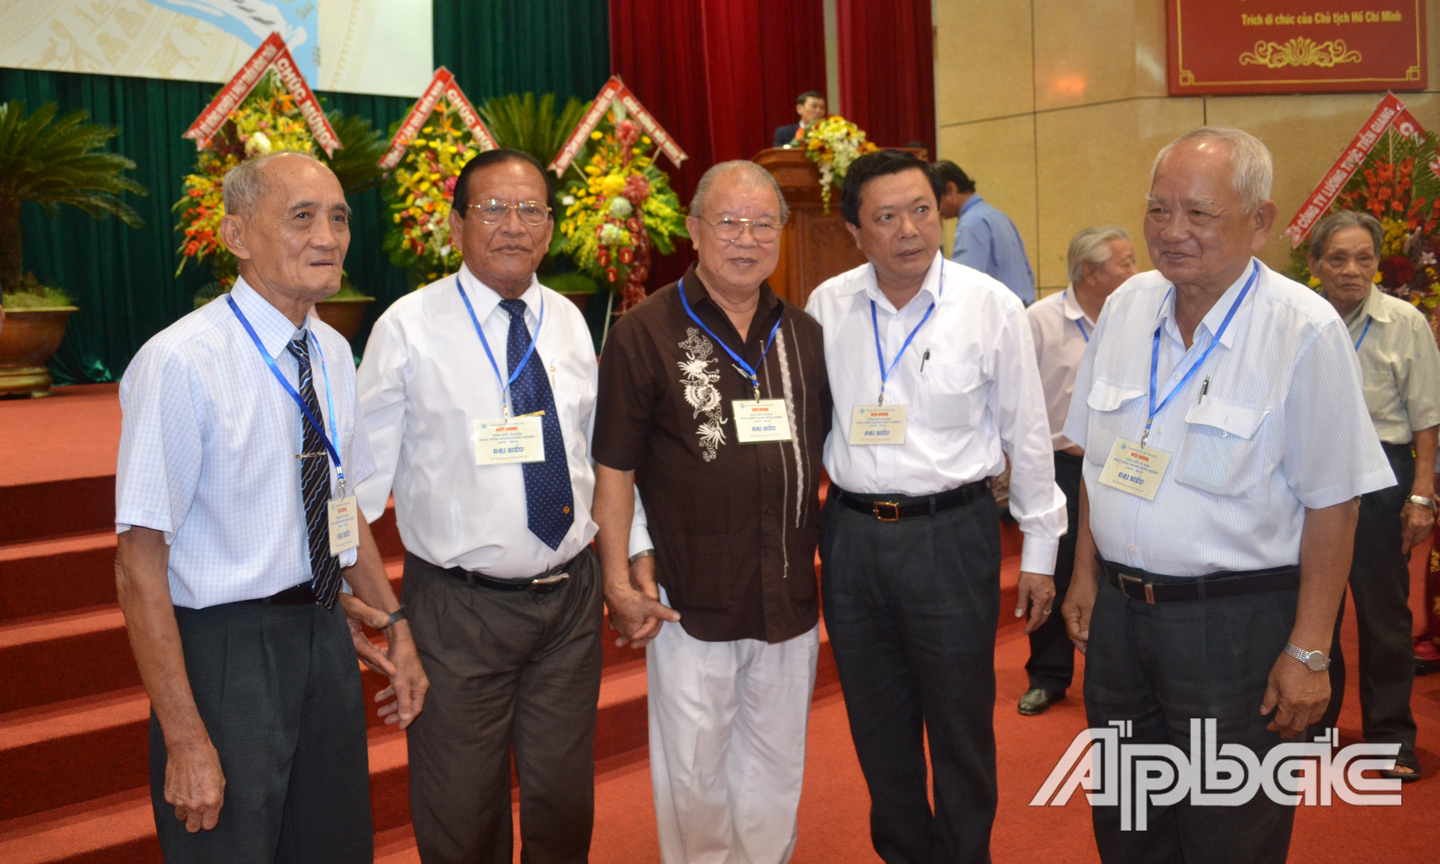 Ông Võ Văn Chung (Hai Chung) và GS. Võ Tòng Xuân (thứ 2 và thứ 3, từ trái sang phải trong ảnh) tại Hội nghị Tổng kết 40 năm hoạt động ngành Nông nghiệp Tiền Giang.